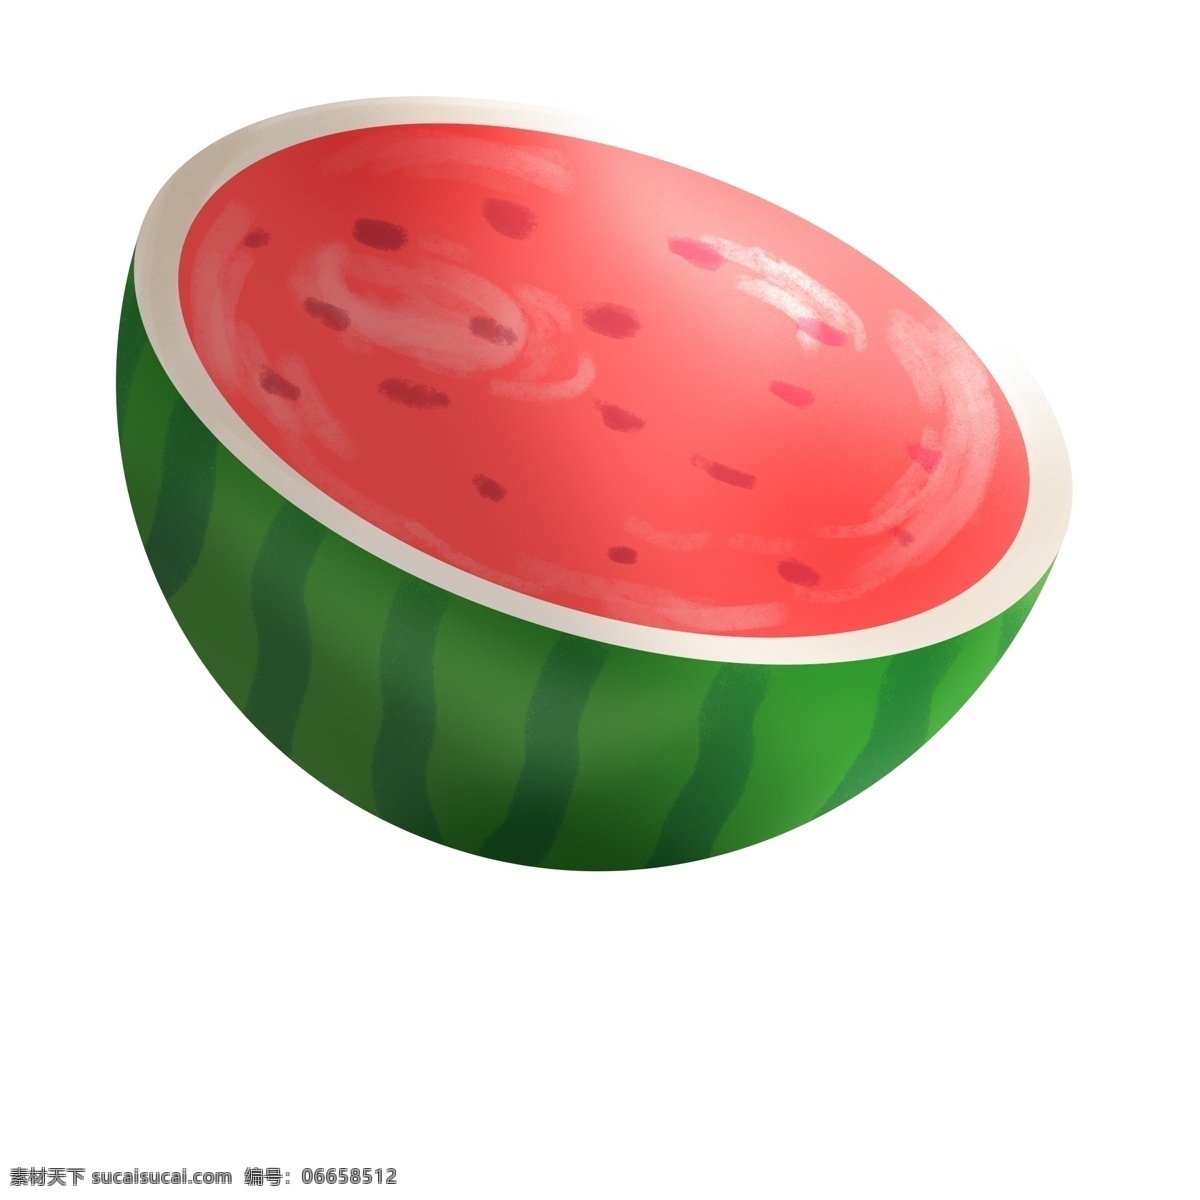 清新 手绘 半 西瓜 元素 卡通 水果 清凉夏日 红色 绿色 插画